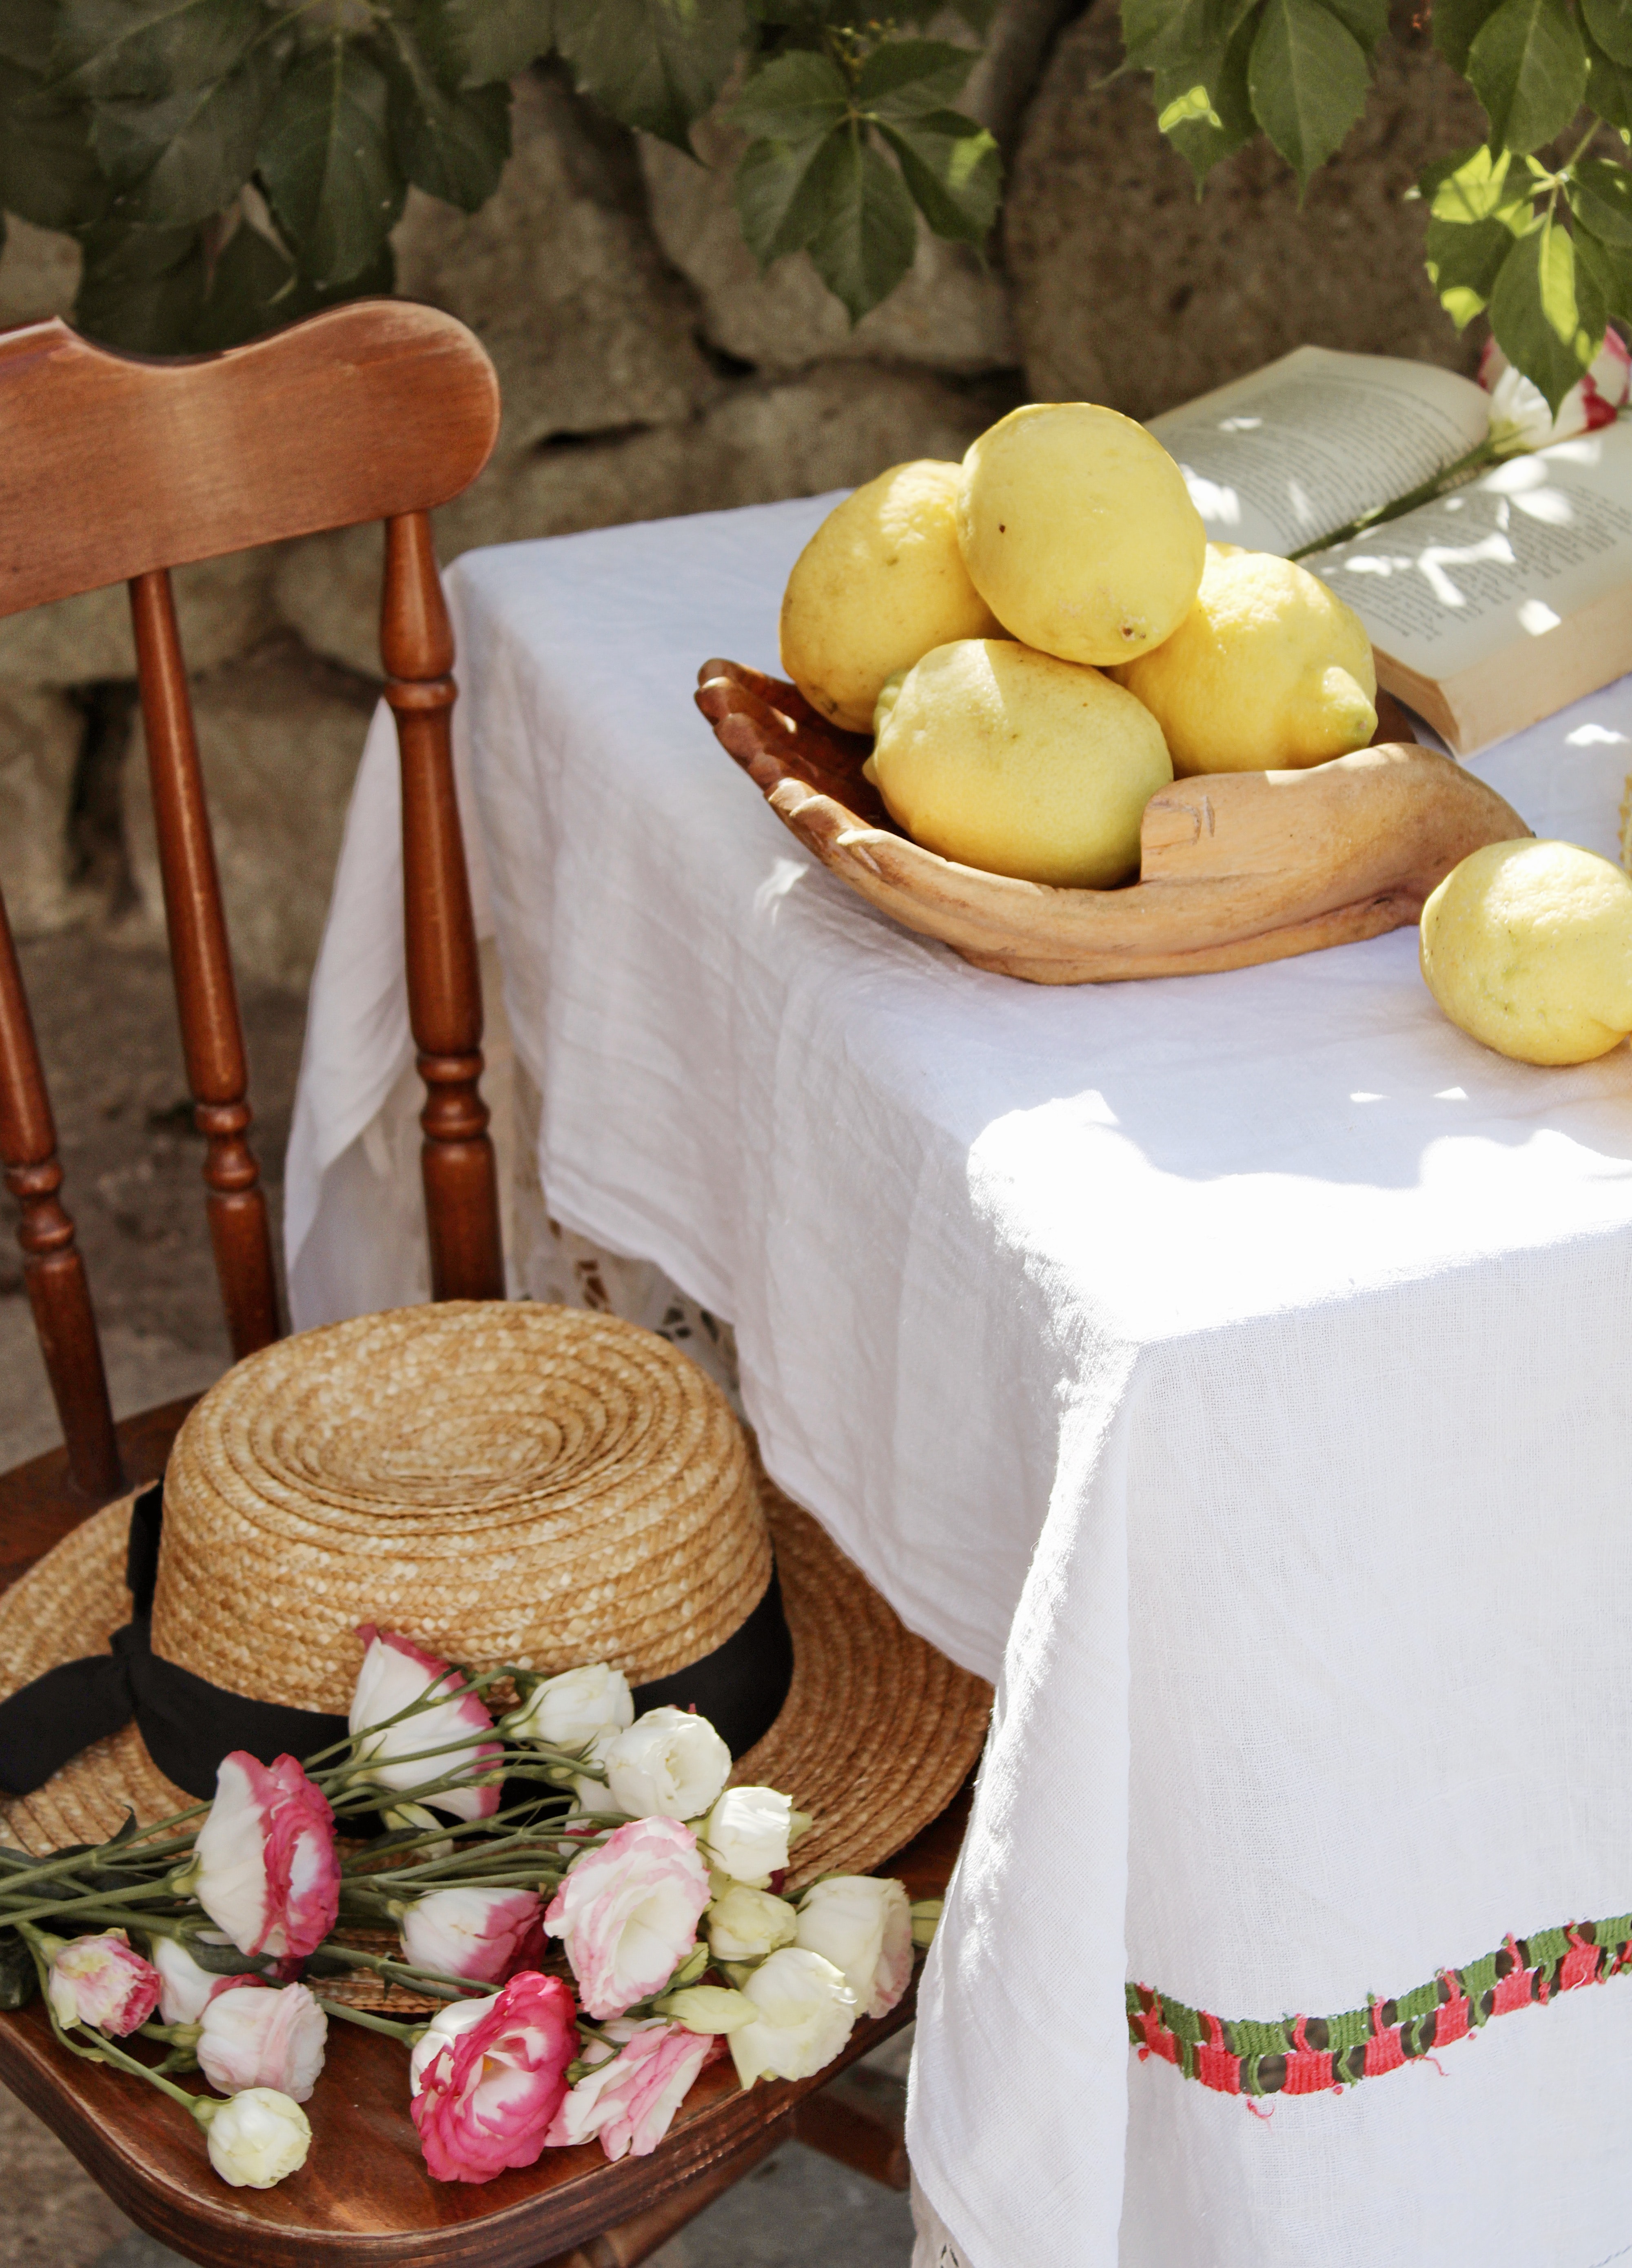 lemons, flowers, miscellanea, miscellaneous, chair, table, citrus, hat, citruses